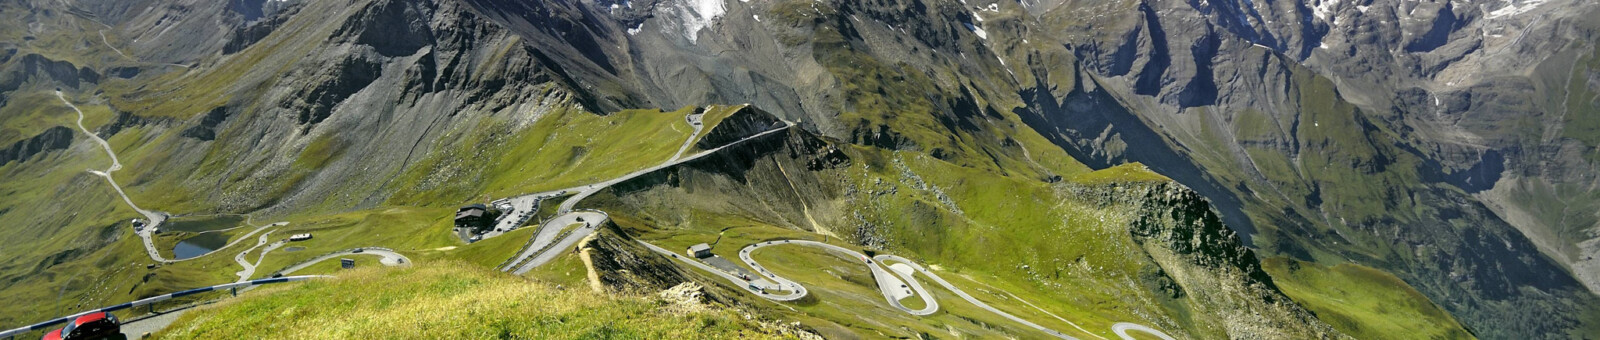     Carretera alpina del Grossglockner / Grossglockner High Alpine Road